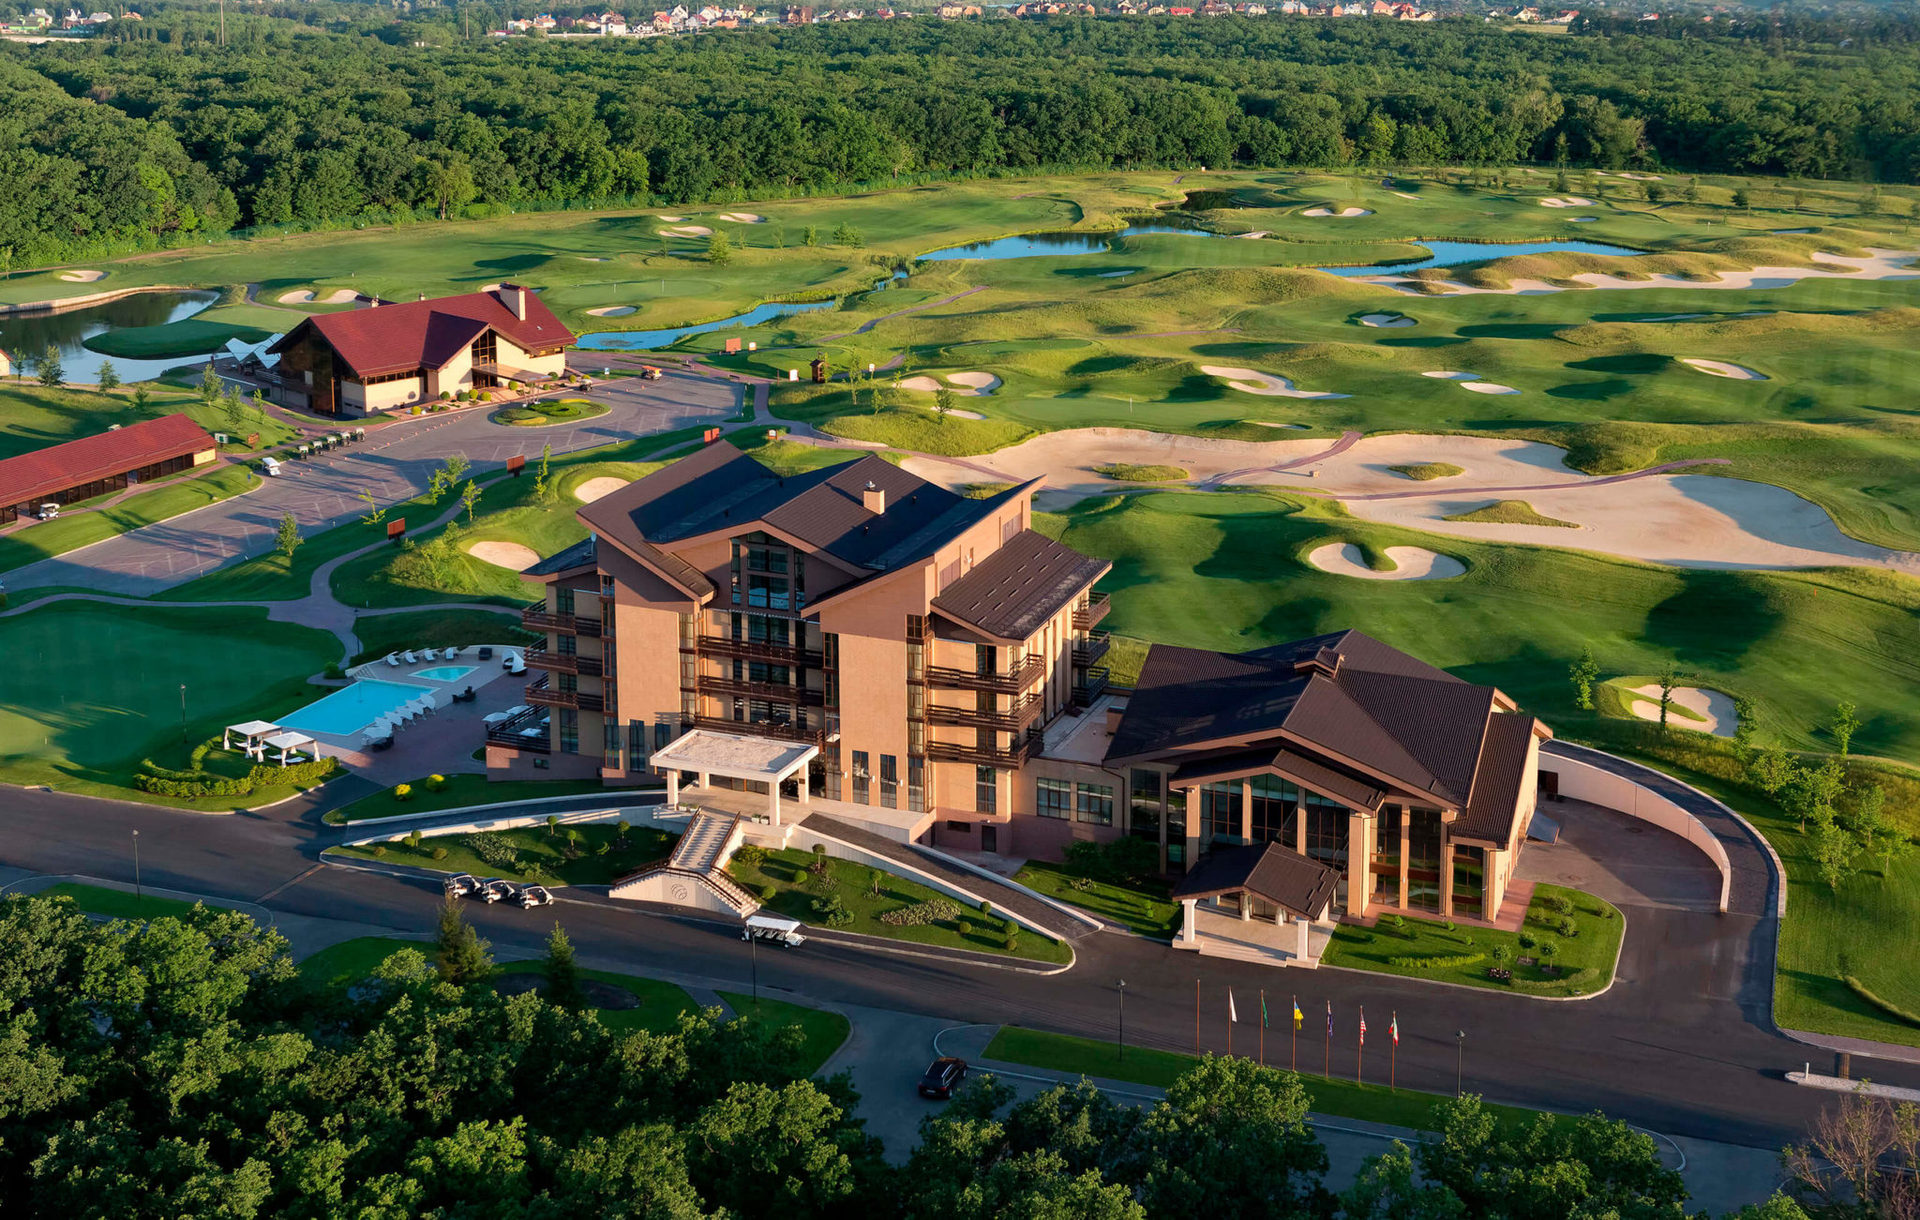 Единственный в Украине гольф-курорт, включающий пятизвездочный бутик-отель, гольф-клуб Superior и ресторан изысканной европейской кухни Albatross.